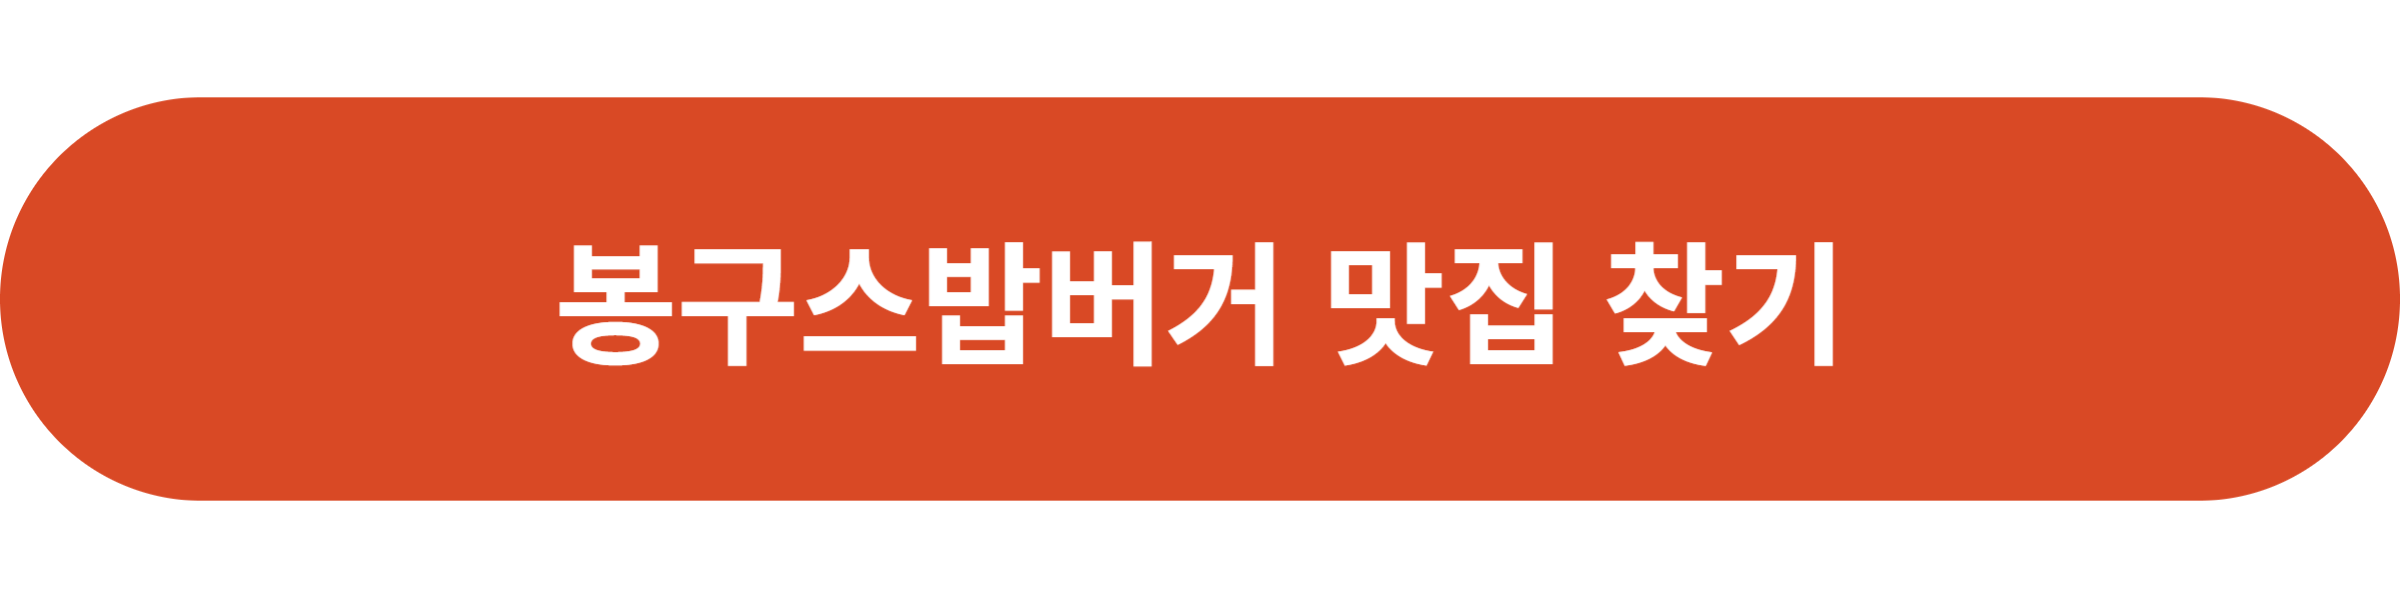 봉구스밥버거